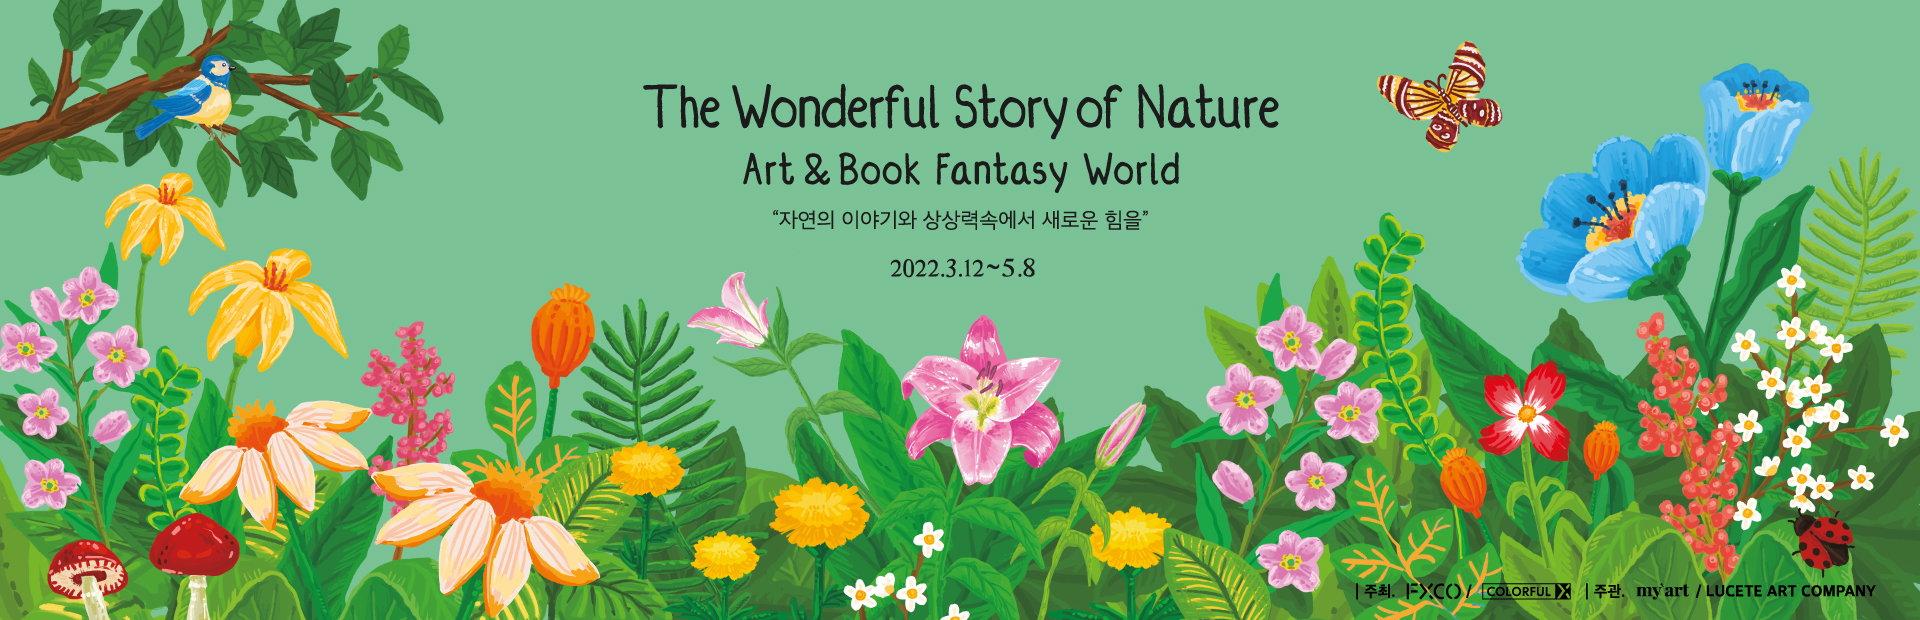 [종료] The Wonderful Story of Nature - Art&Book Fantasy World